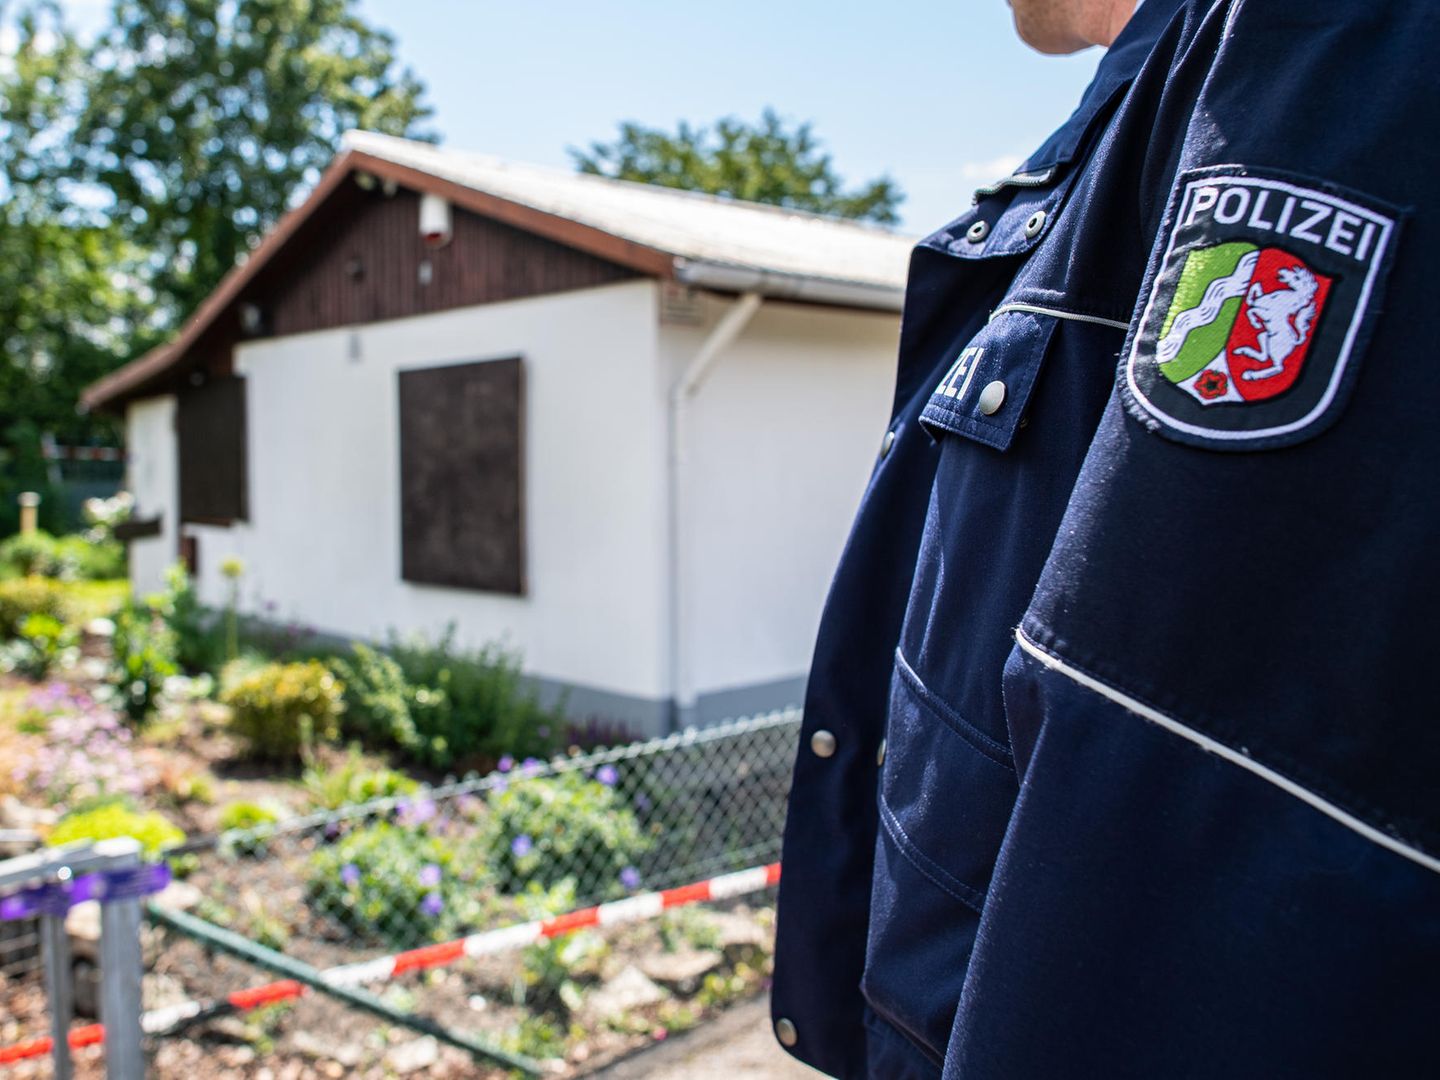 Polizei Hessen - Wie wird eigentlich darüber entschieden, wo geblitzt wird?